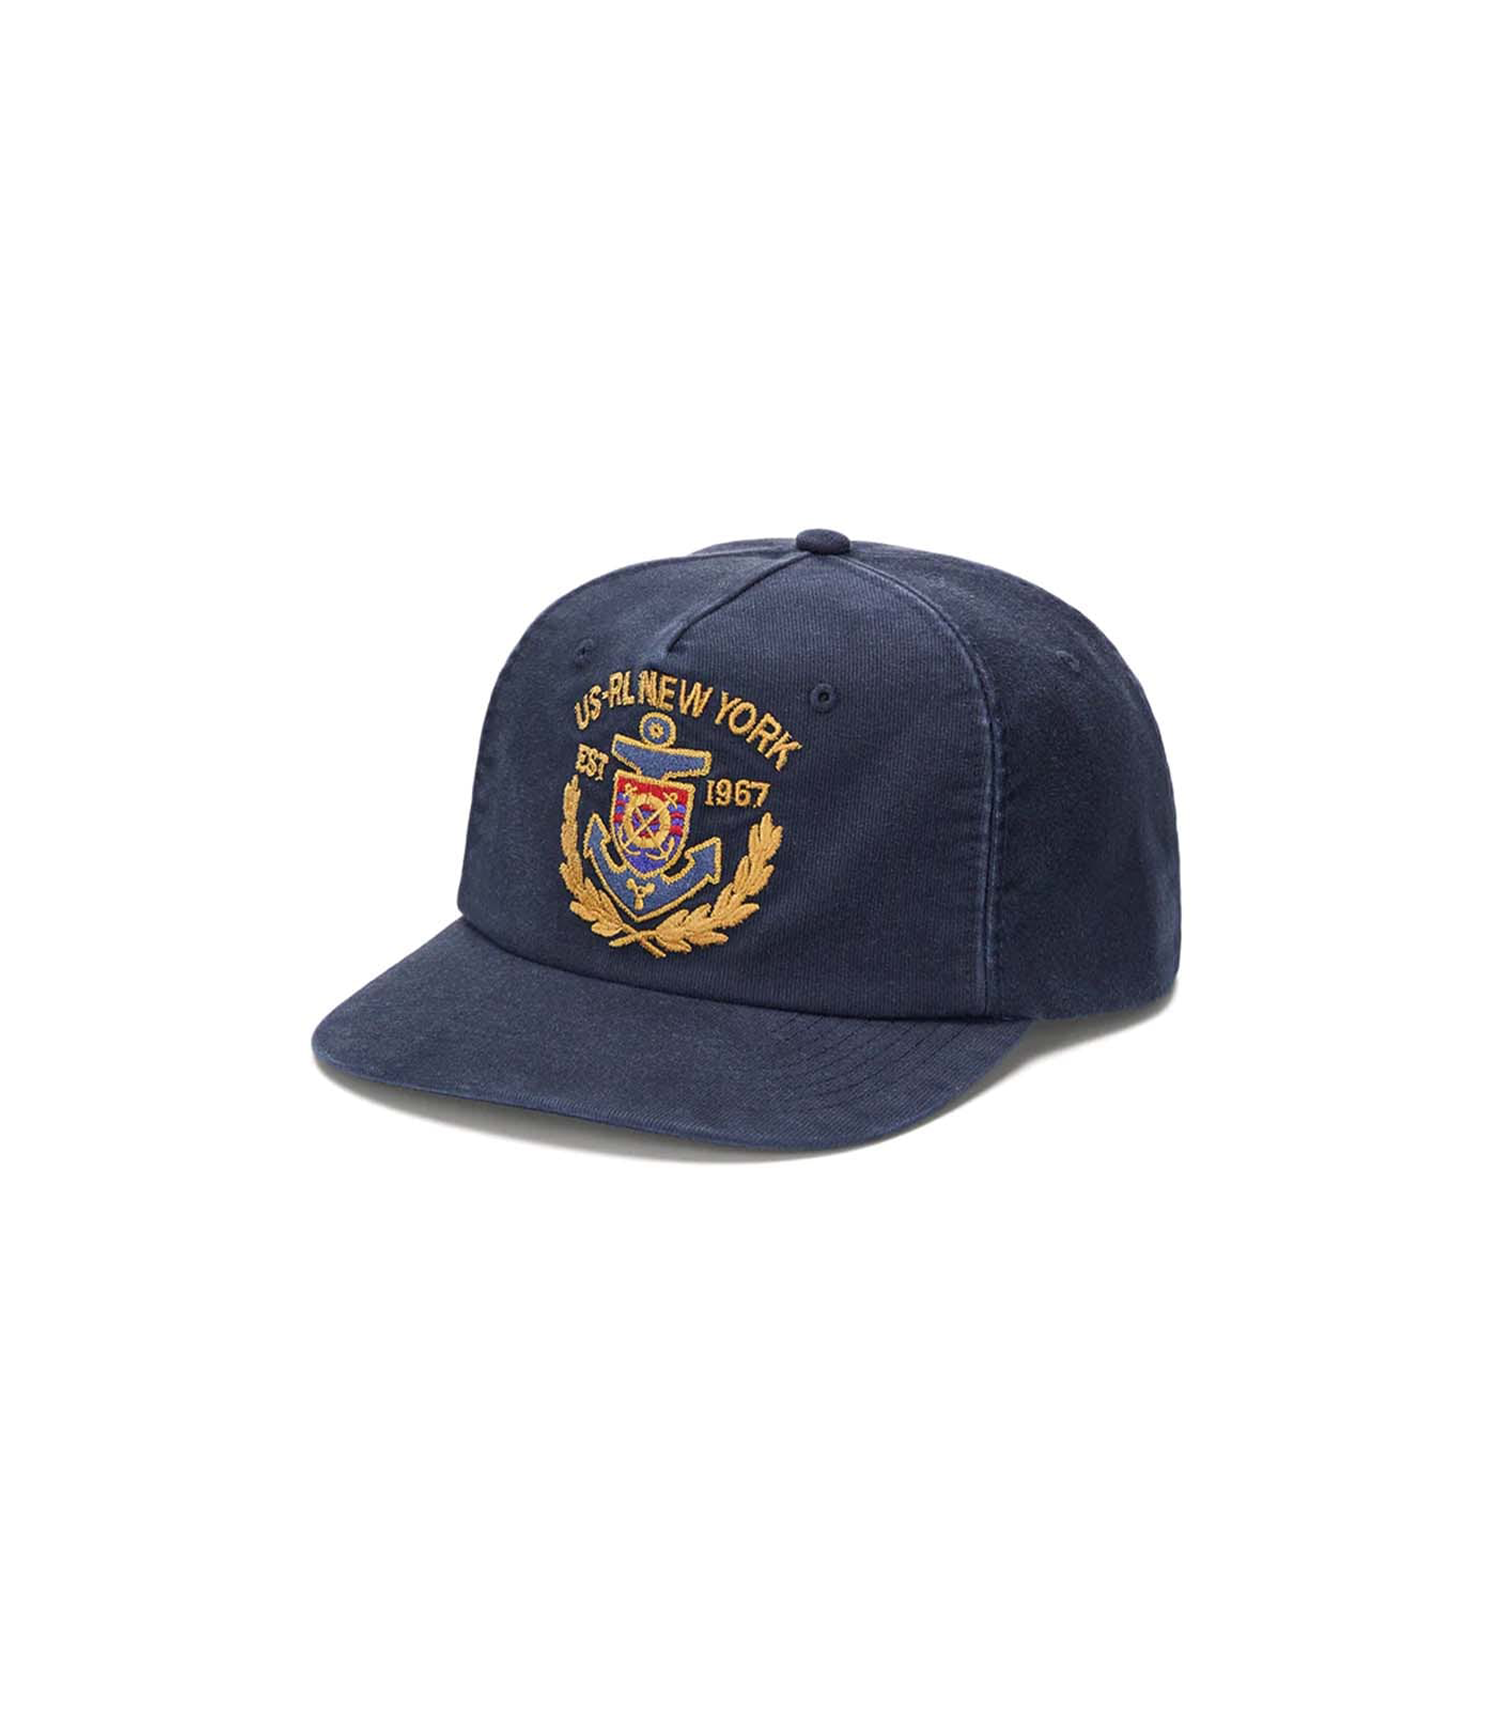 Retro Crown Sport Cap - Newport Navy